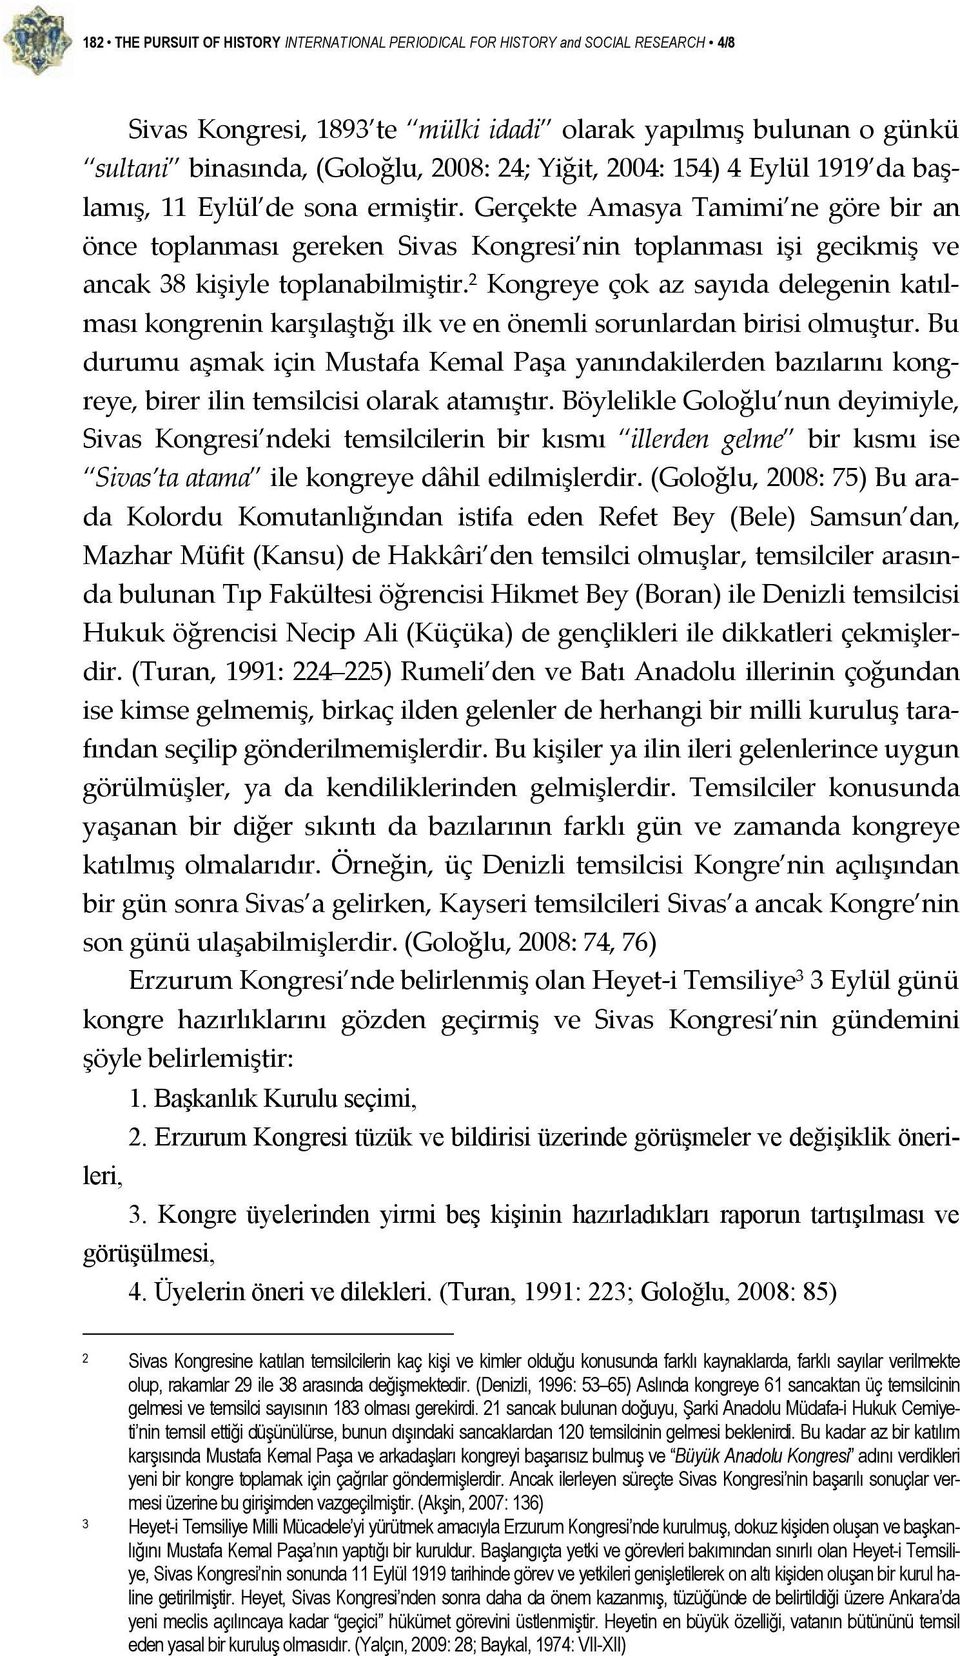 Gerçekte Amasya Tamimi ne göre bir an önce toplanması gereken Sivas Kongresi nin toplanması işi gecikmiş ve ancak 38 kişiyle toplanabilmiştir.